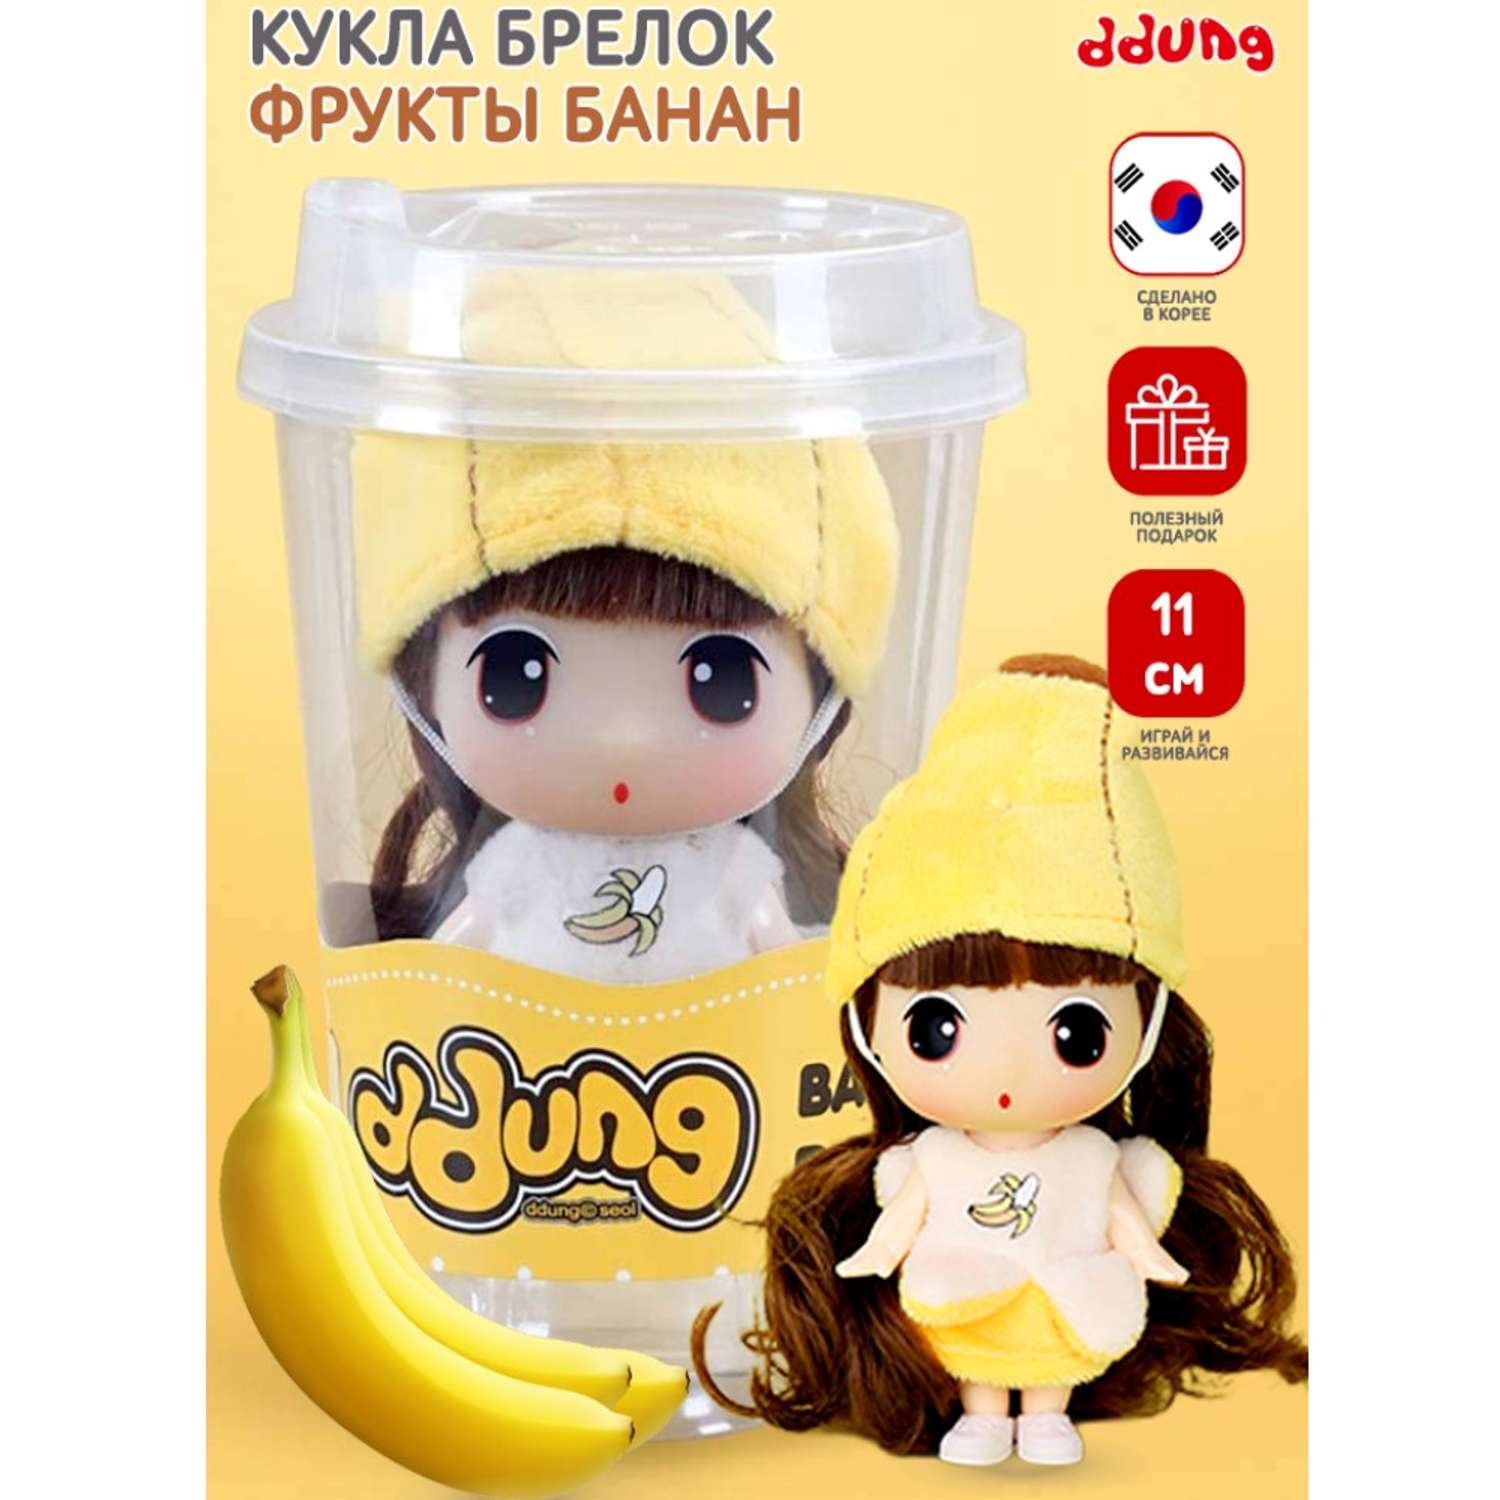 Уникальная коллекционная кукла DDung банан пупс из серии фрукты и ягоды FDE0905-4 - фото 2